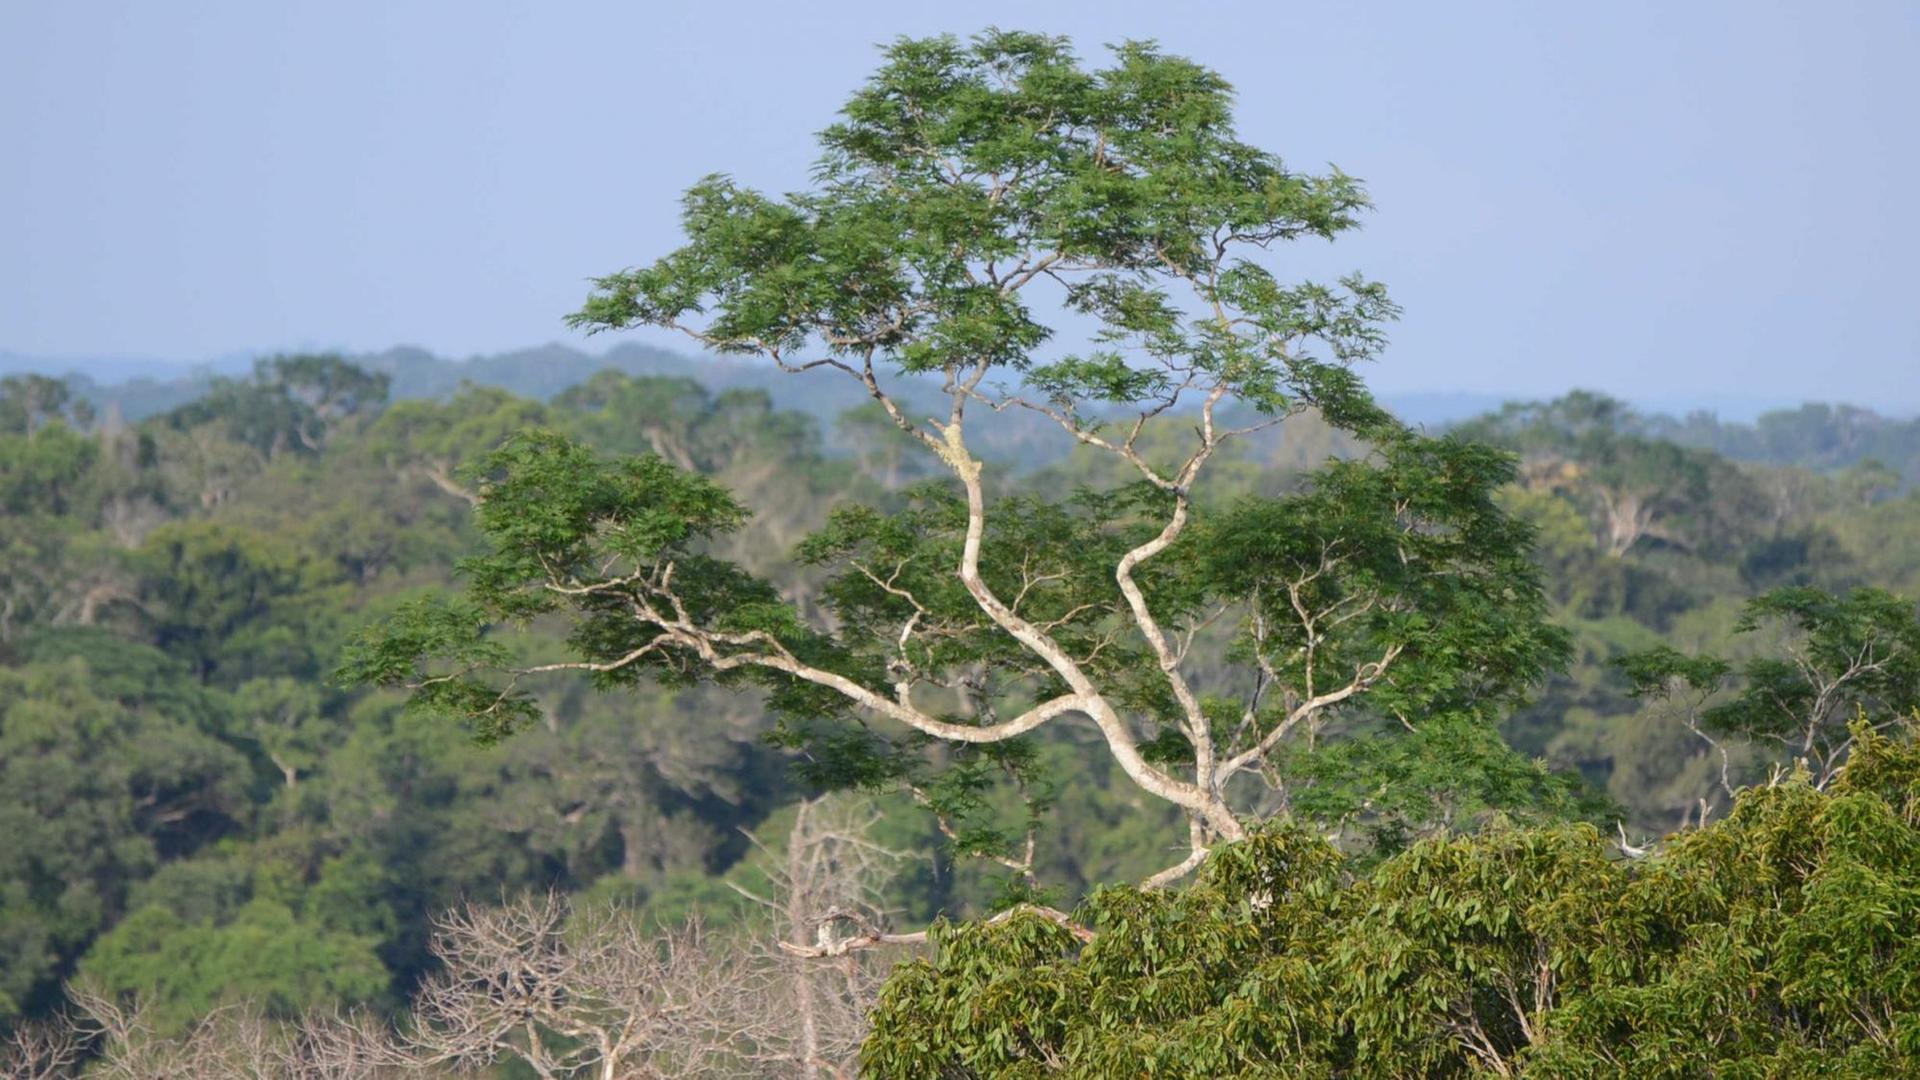 Blick auf Bäume im Amazonas-Regenwald in Brasilien.